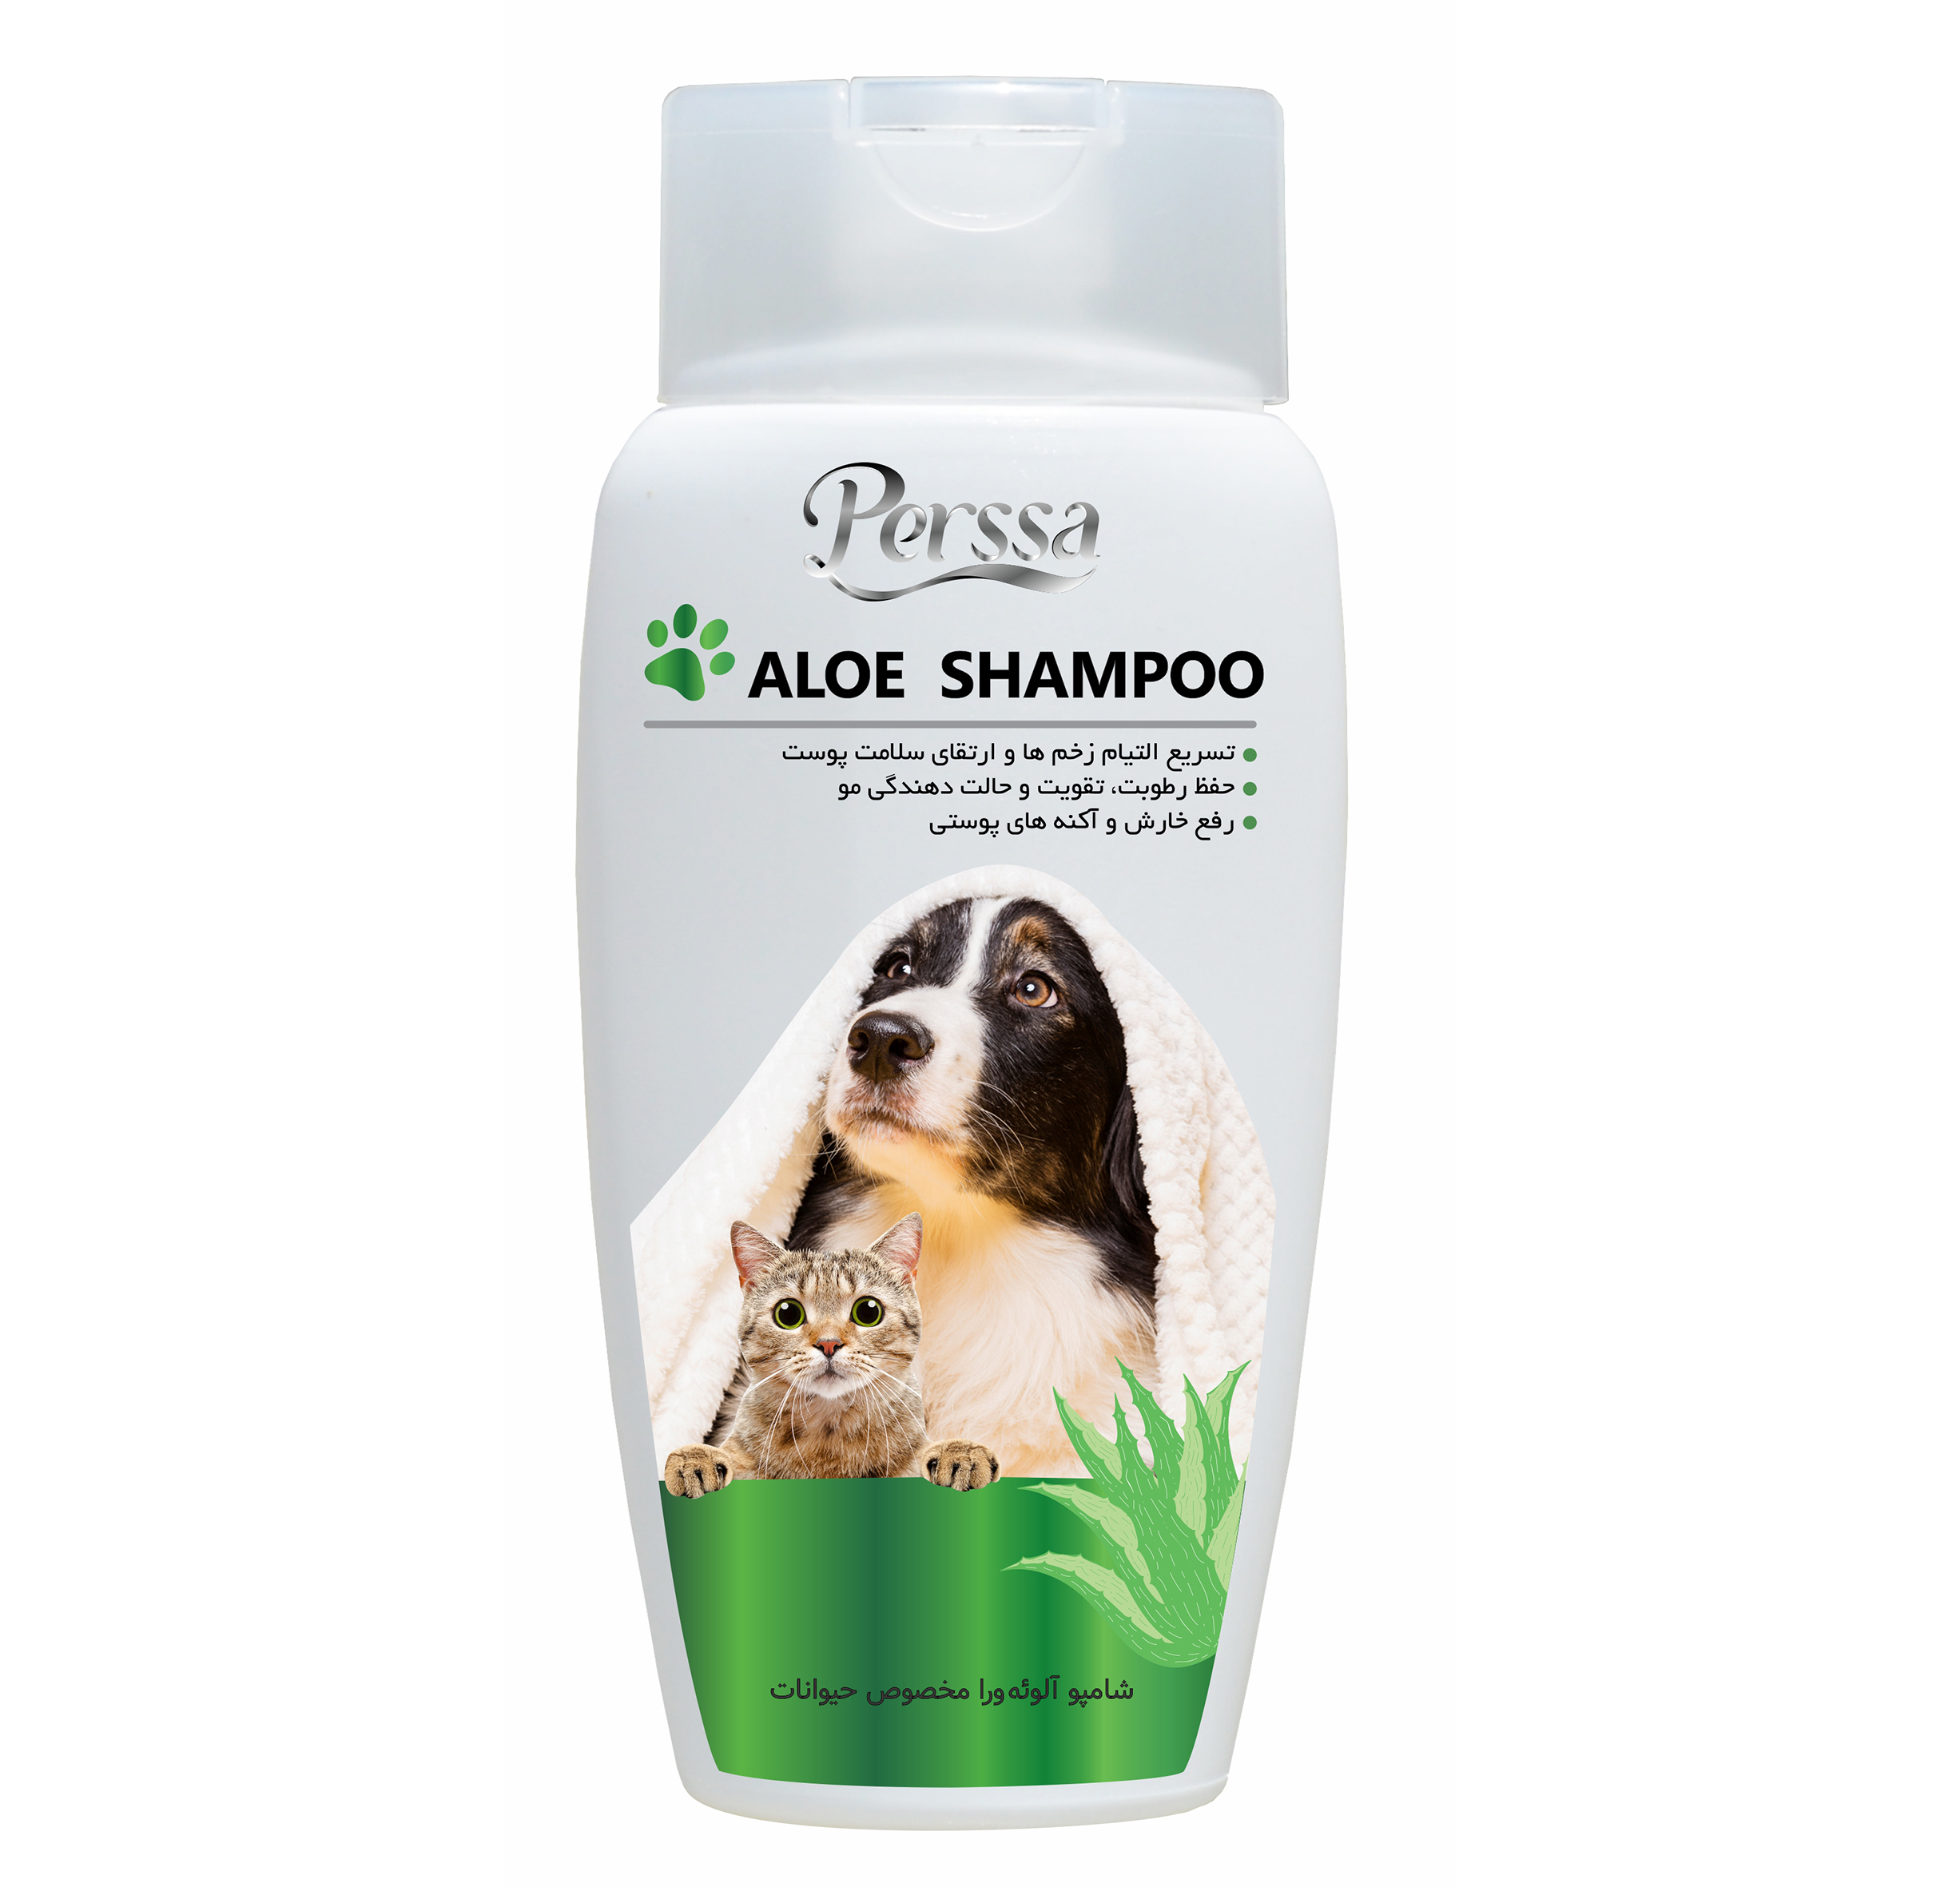 aloevera shampoo